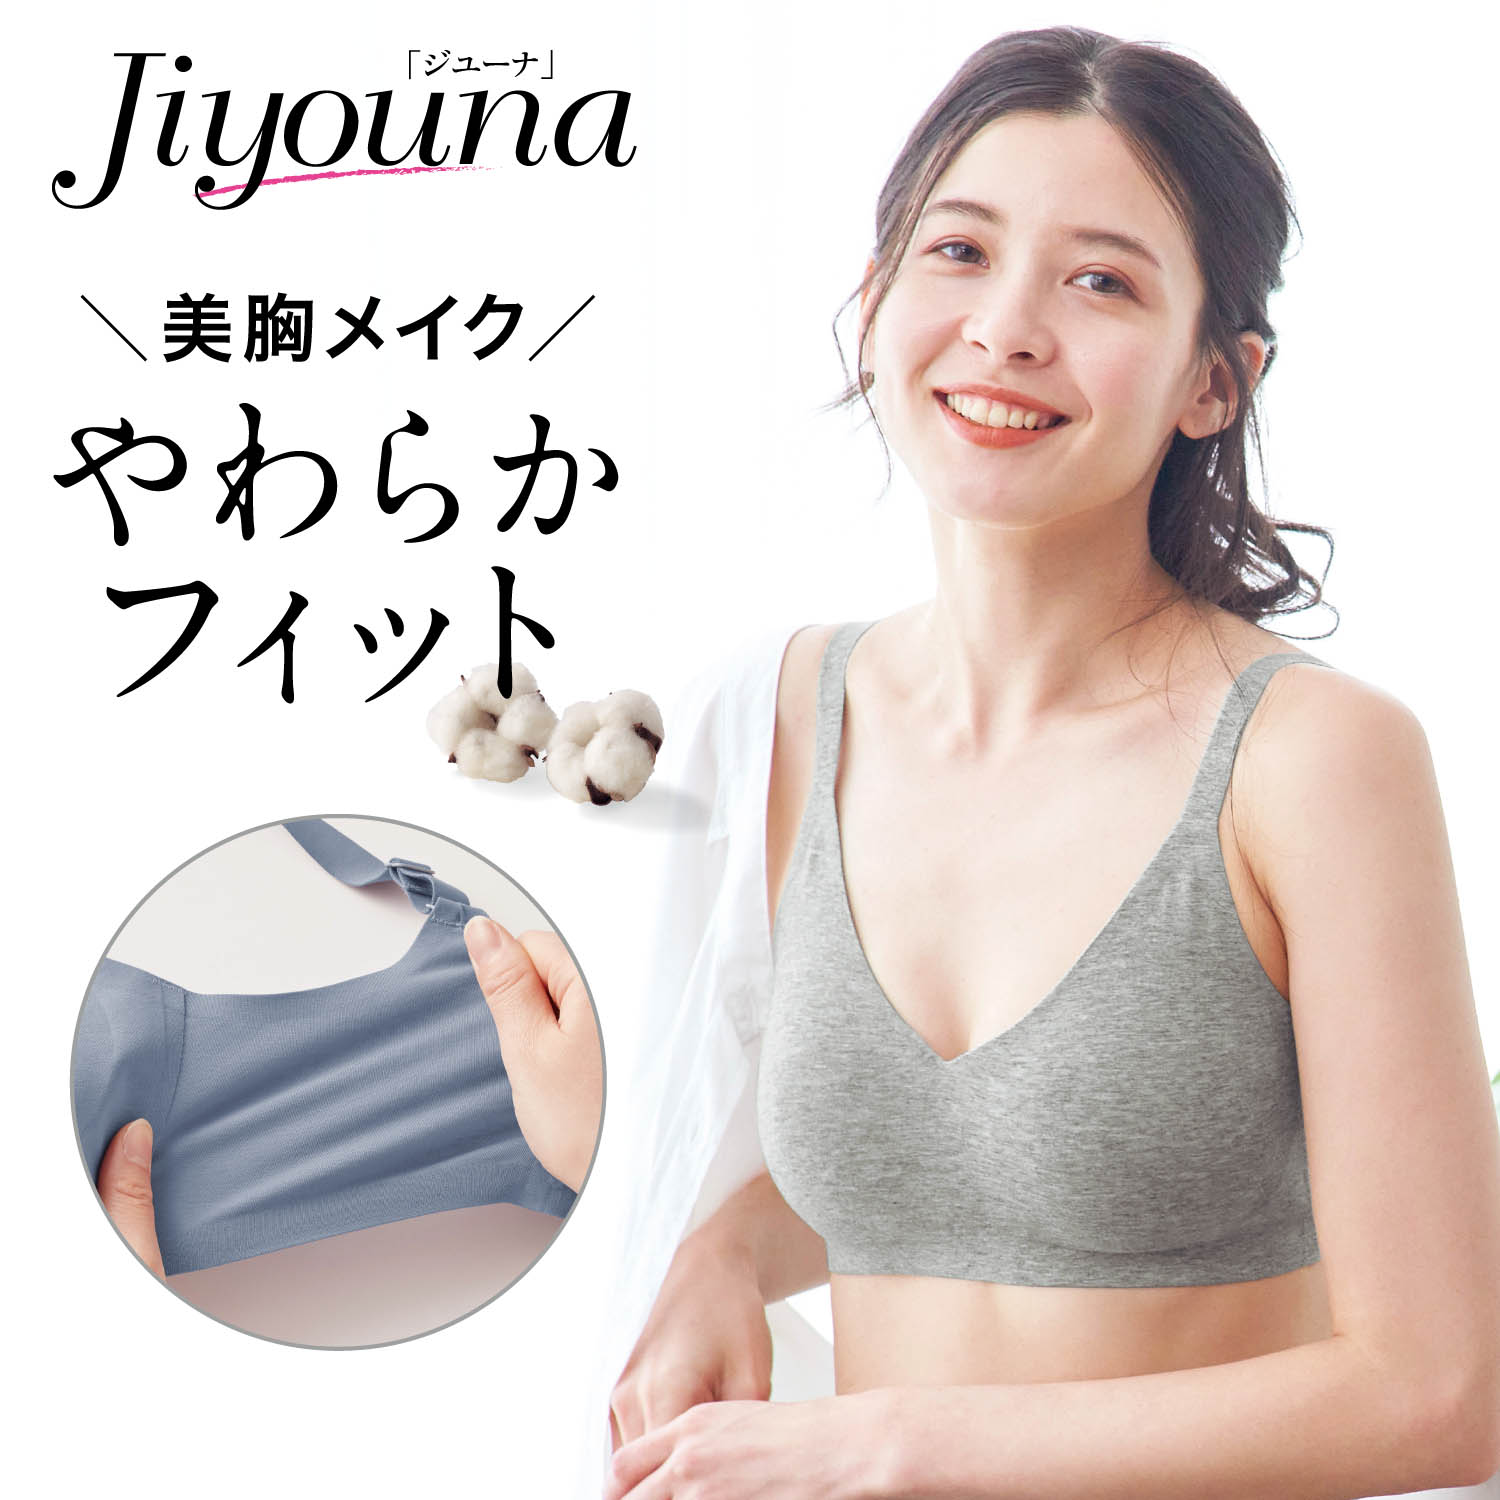 【ジユーナ/Jiyouna】ジユーナブラ【トップス選ばず、ラクちん美胸】(ノンワイヤーブラ)画像